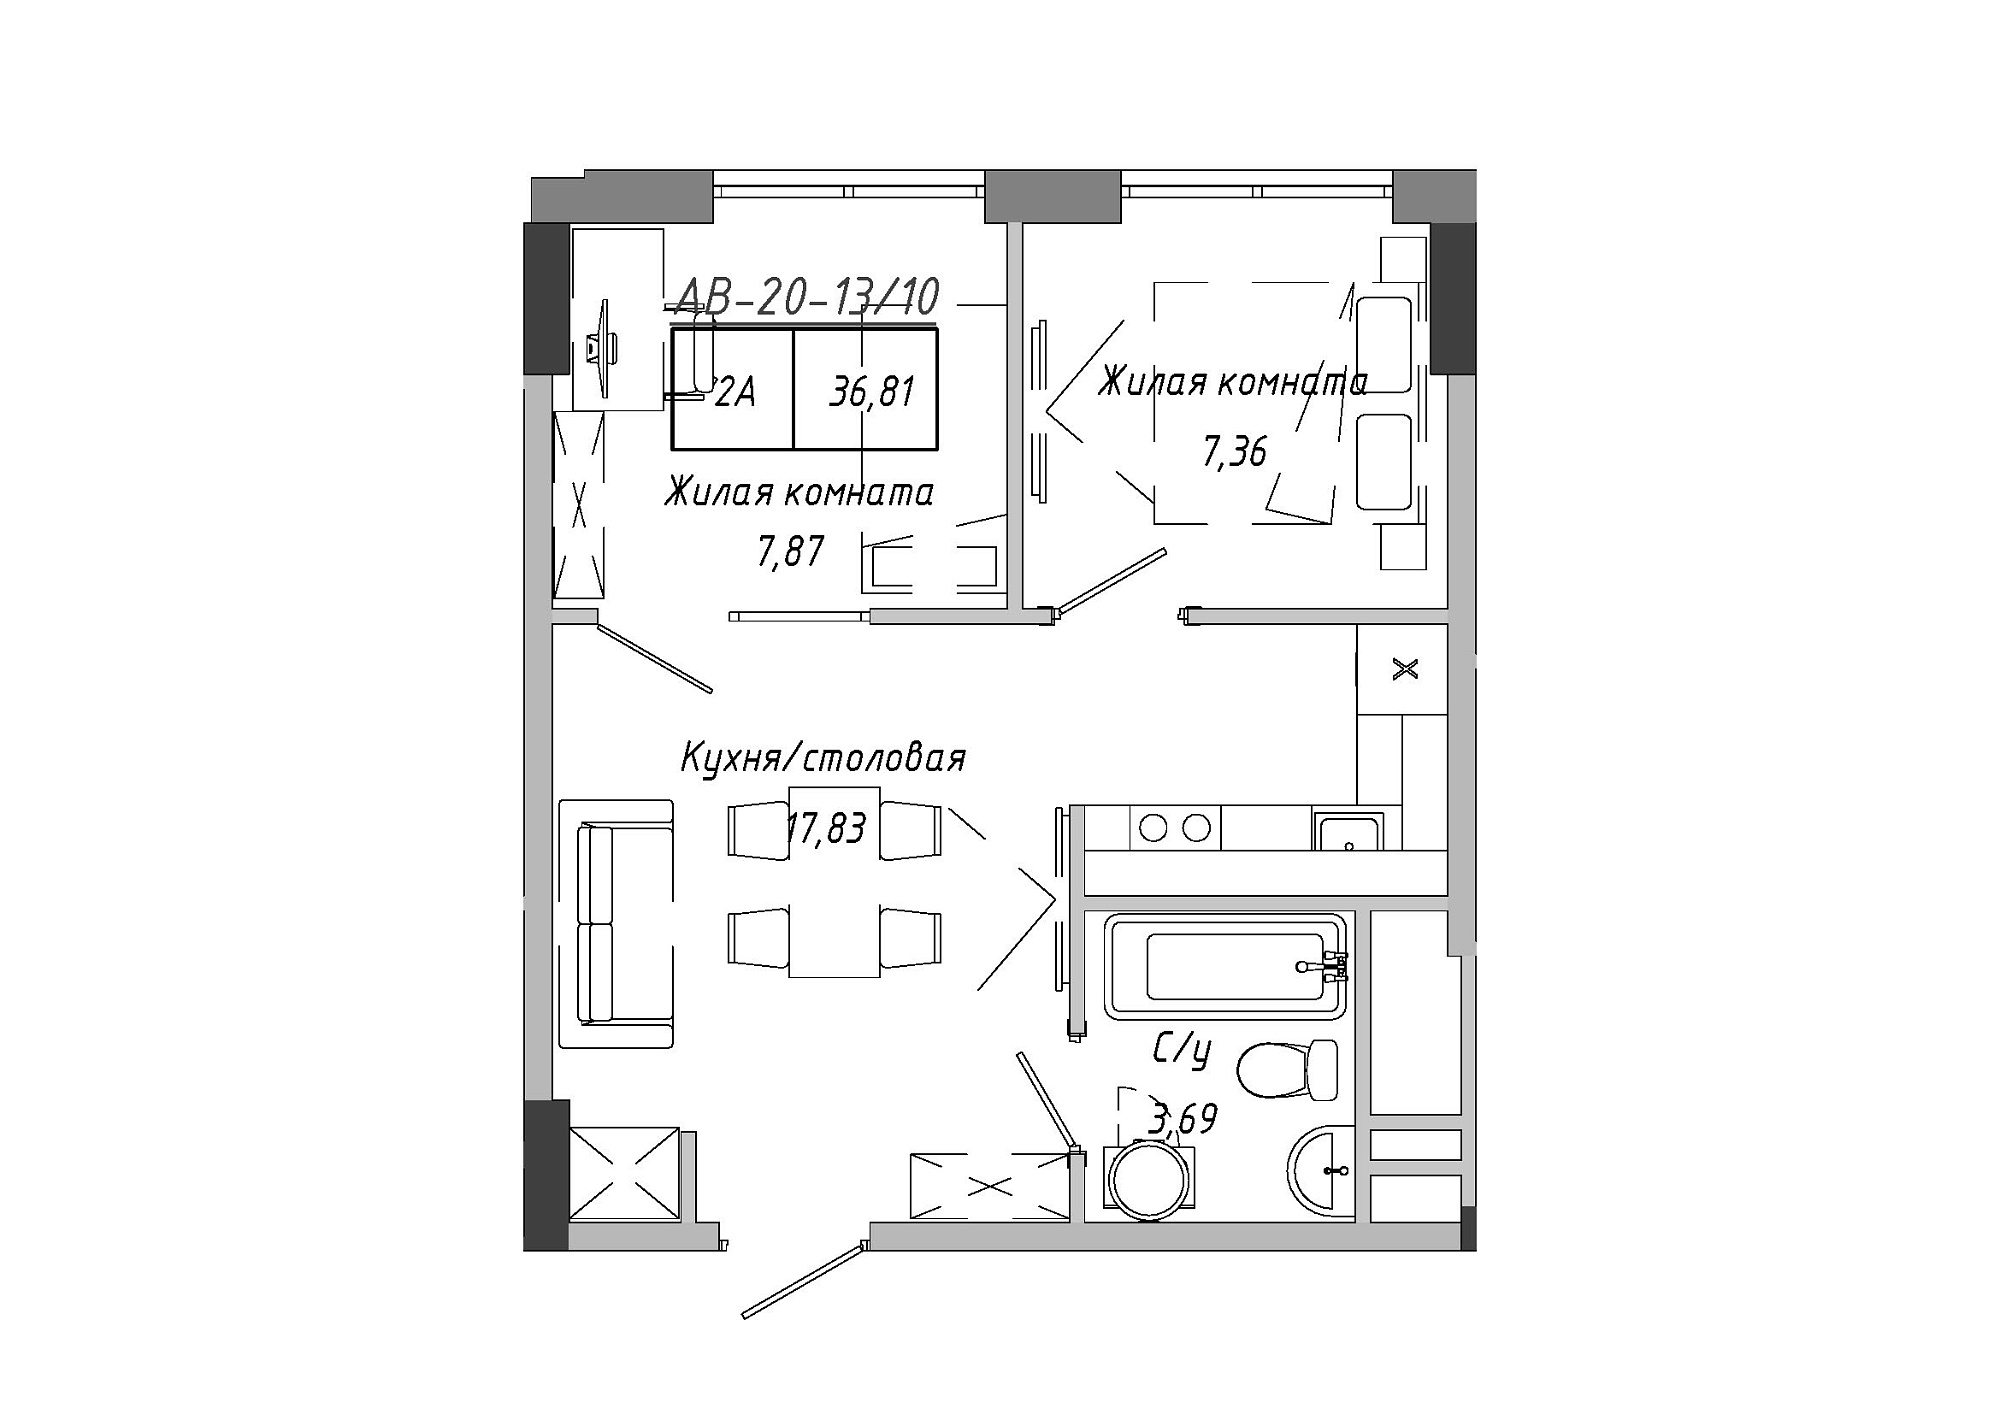 Планировка 2-к квартира площей 36.81м2, AB-20-13/00110.